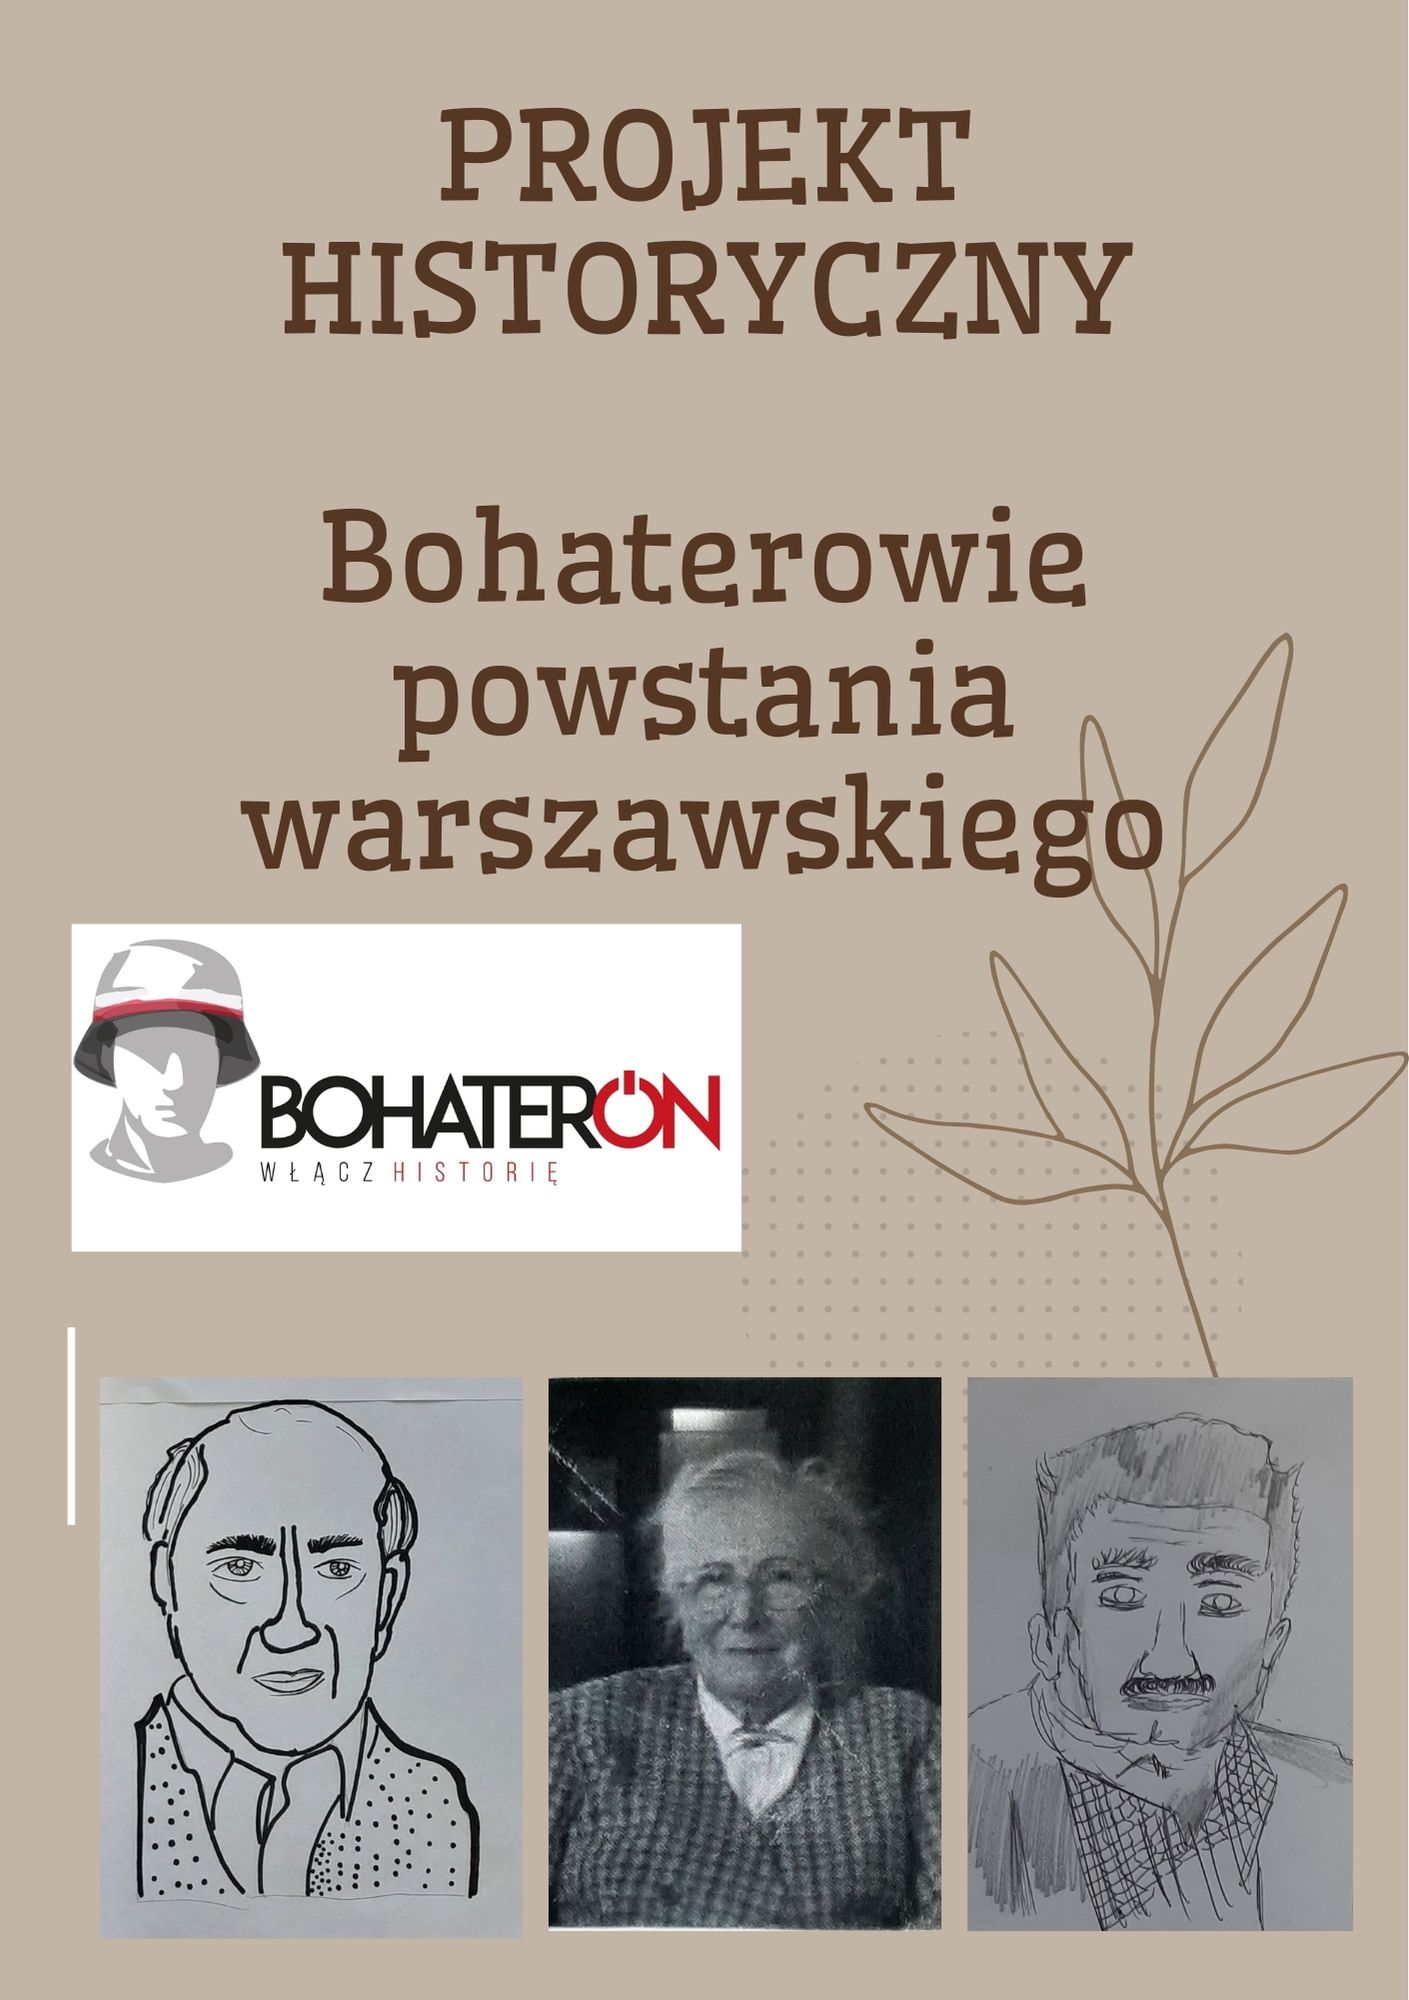 Projekt Historyczny - BohaterON. Na zdjęciu znajduje się plakat projektu "Bohaterowie powstania warszawskiego"